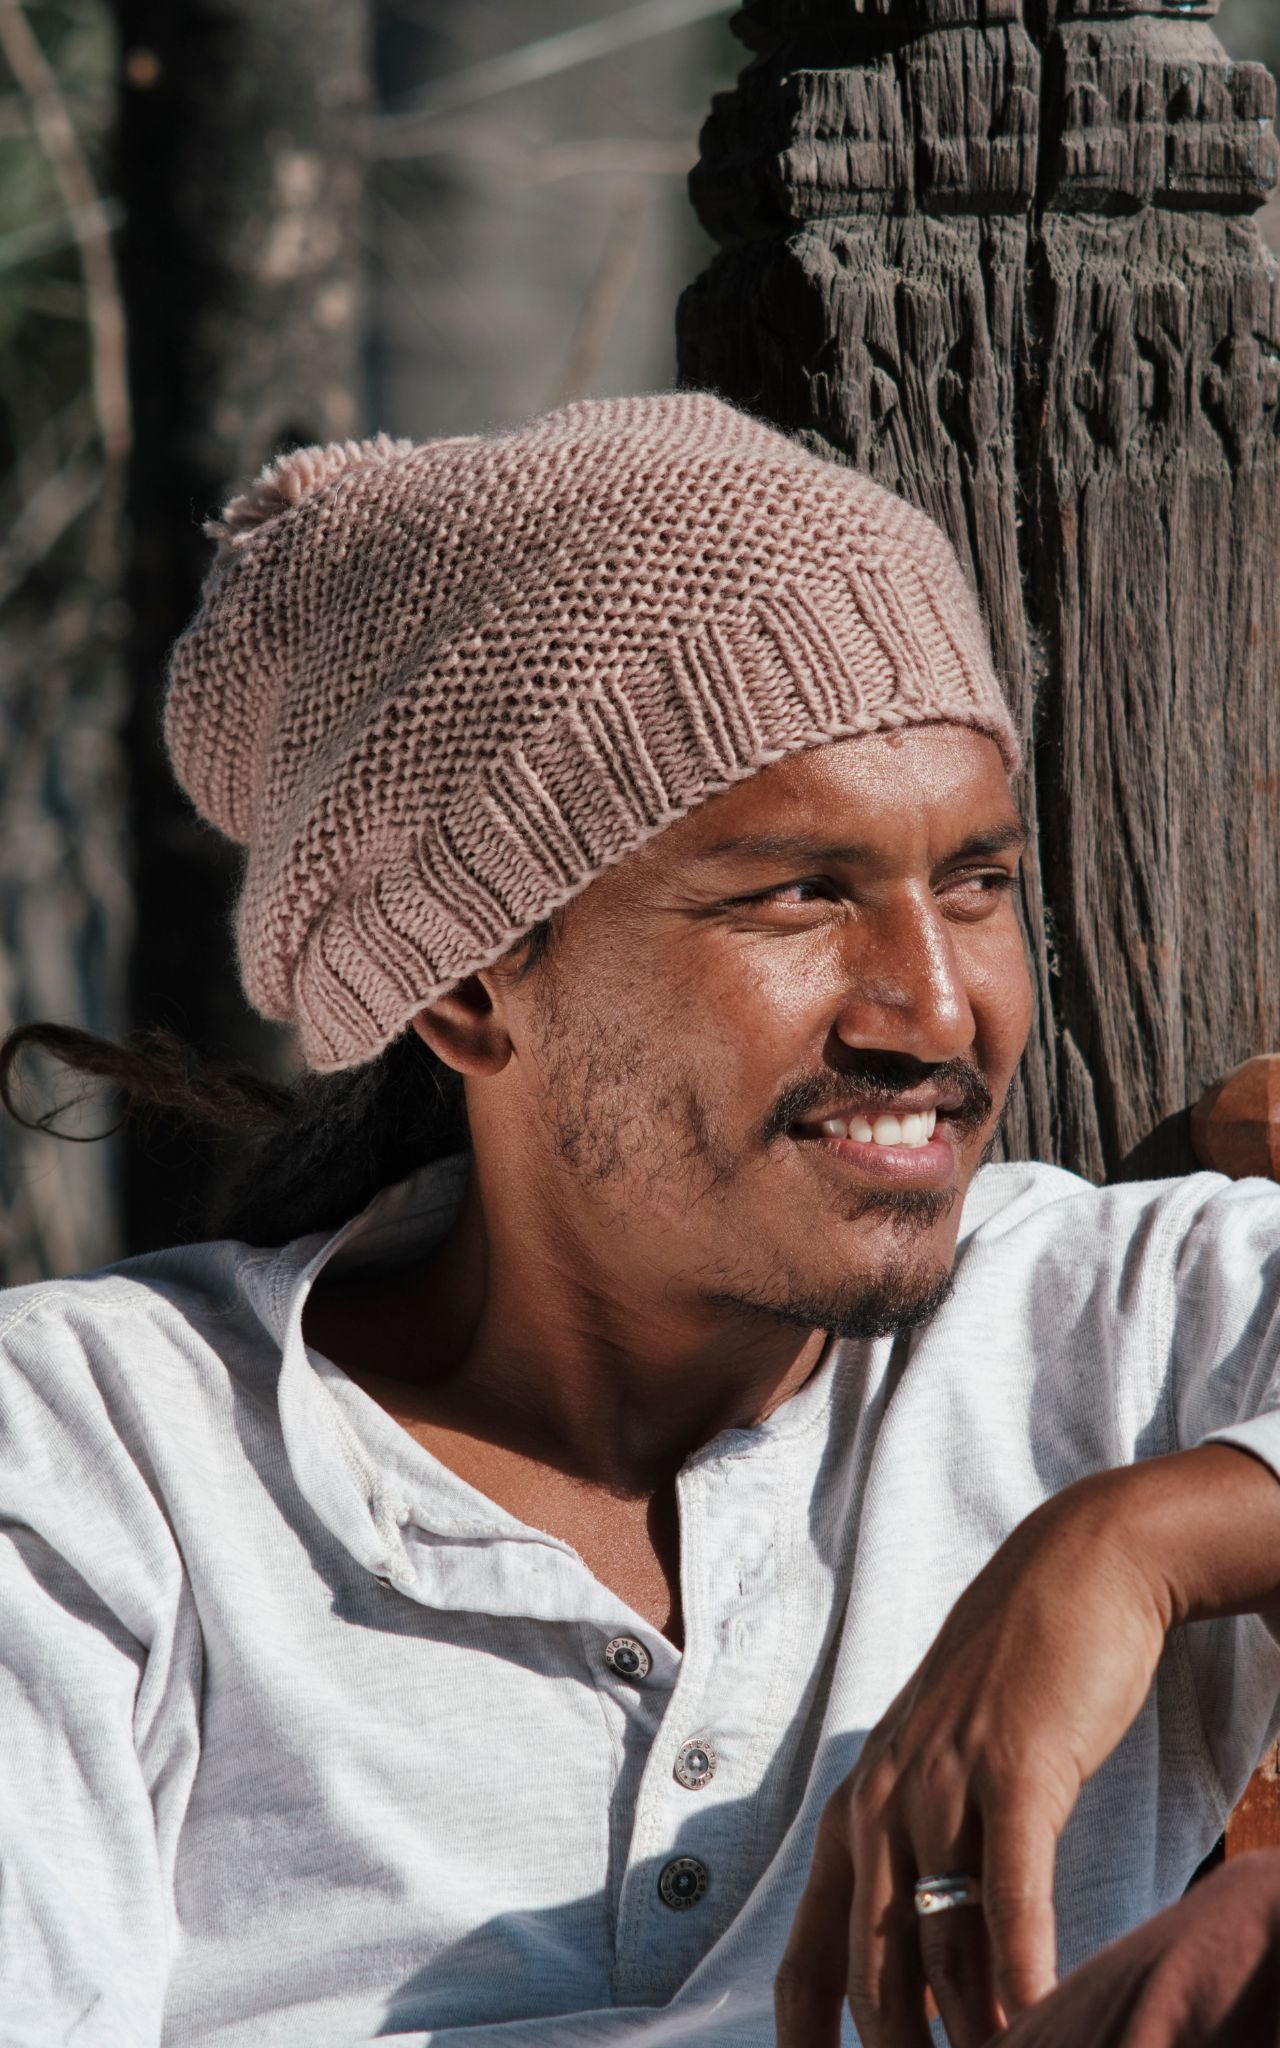 Surya Australia Mulesing Free merino Wool Beanie for men from Nepal - Dusty Mauve